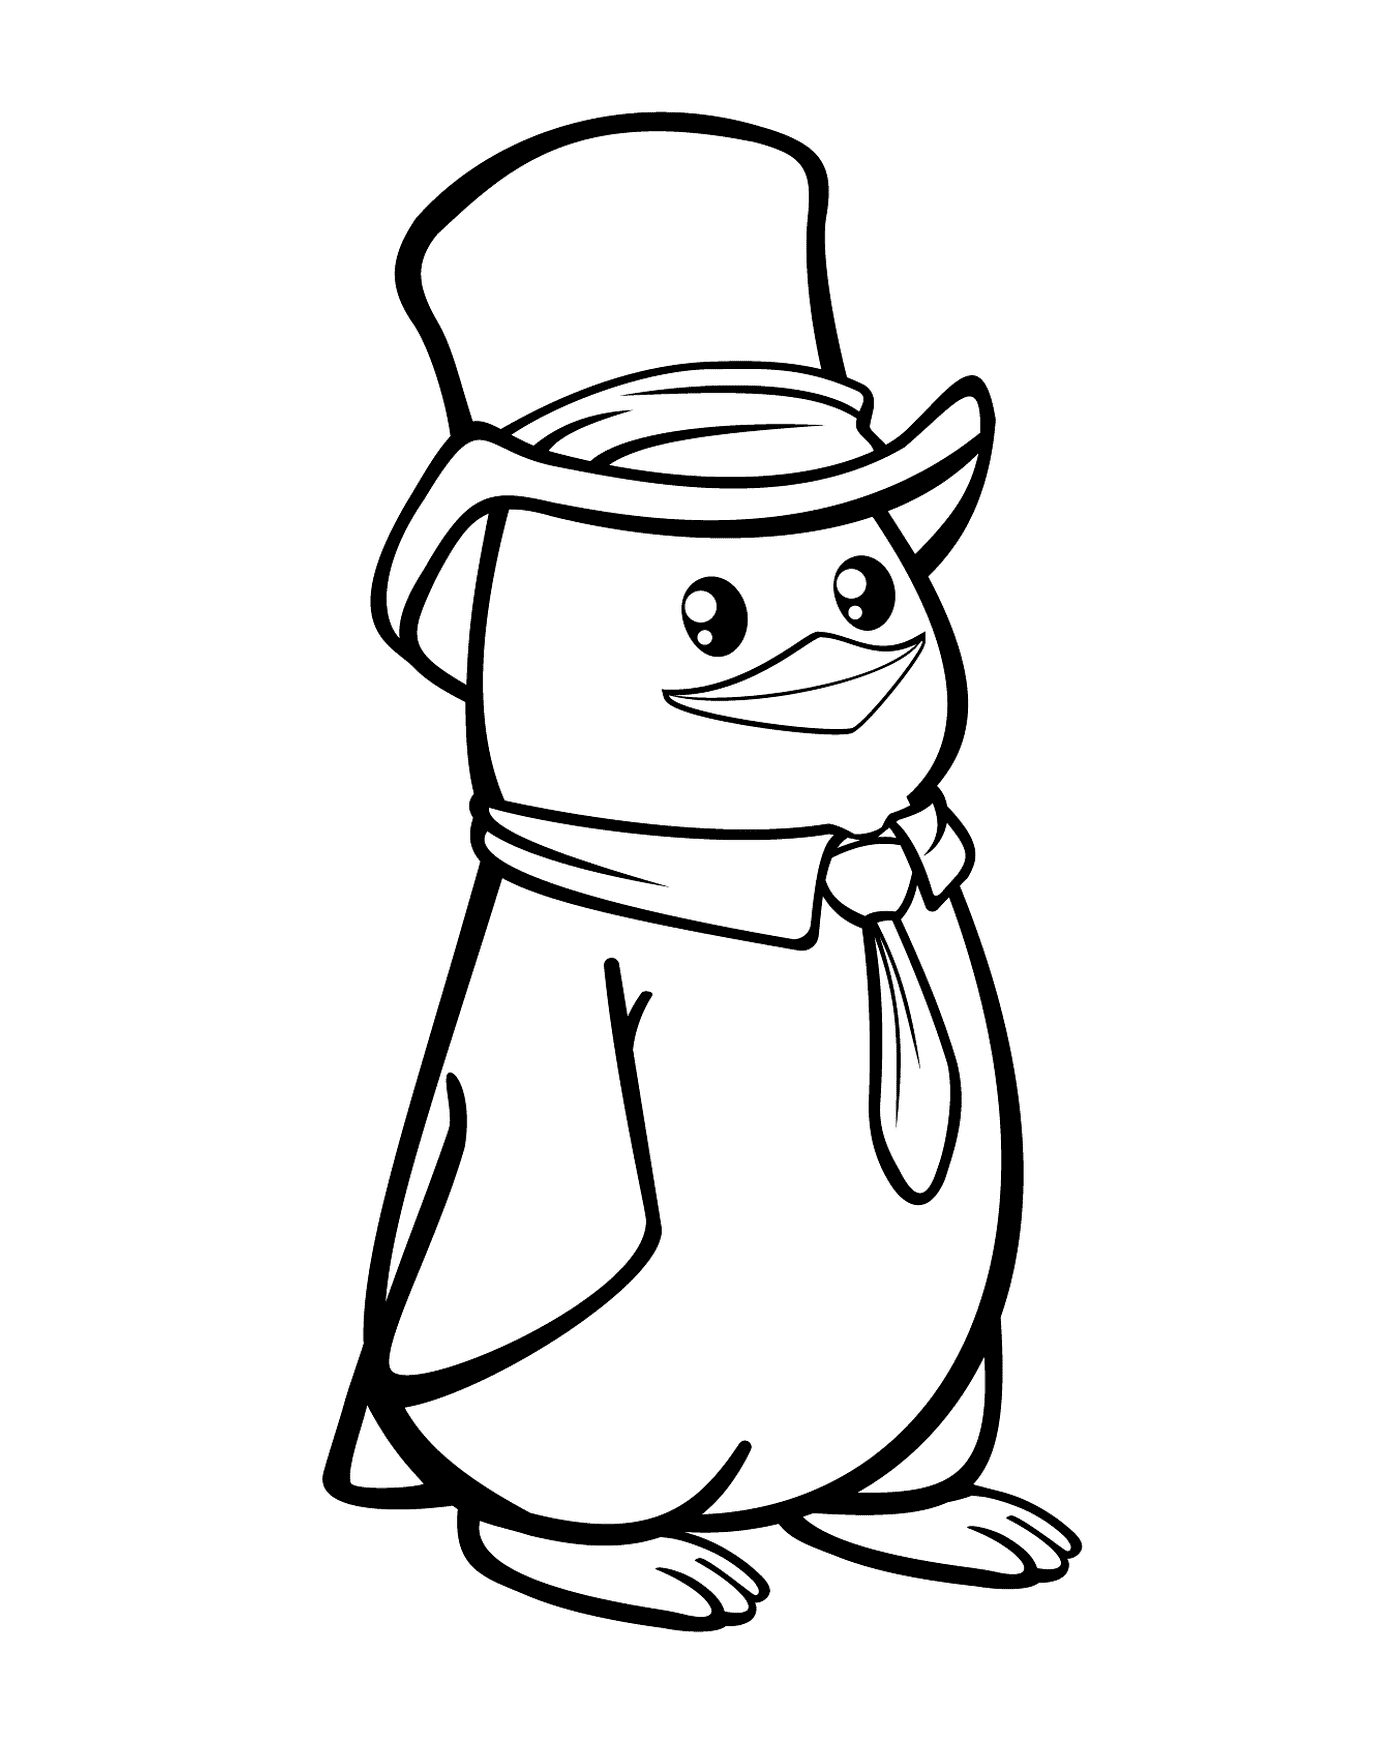  一只戴帽子领领带的企鹅 